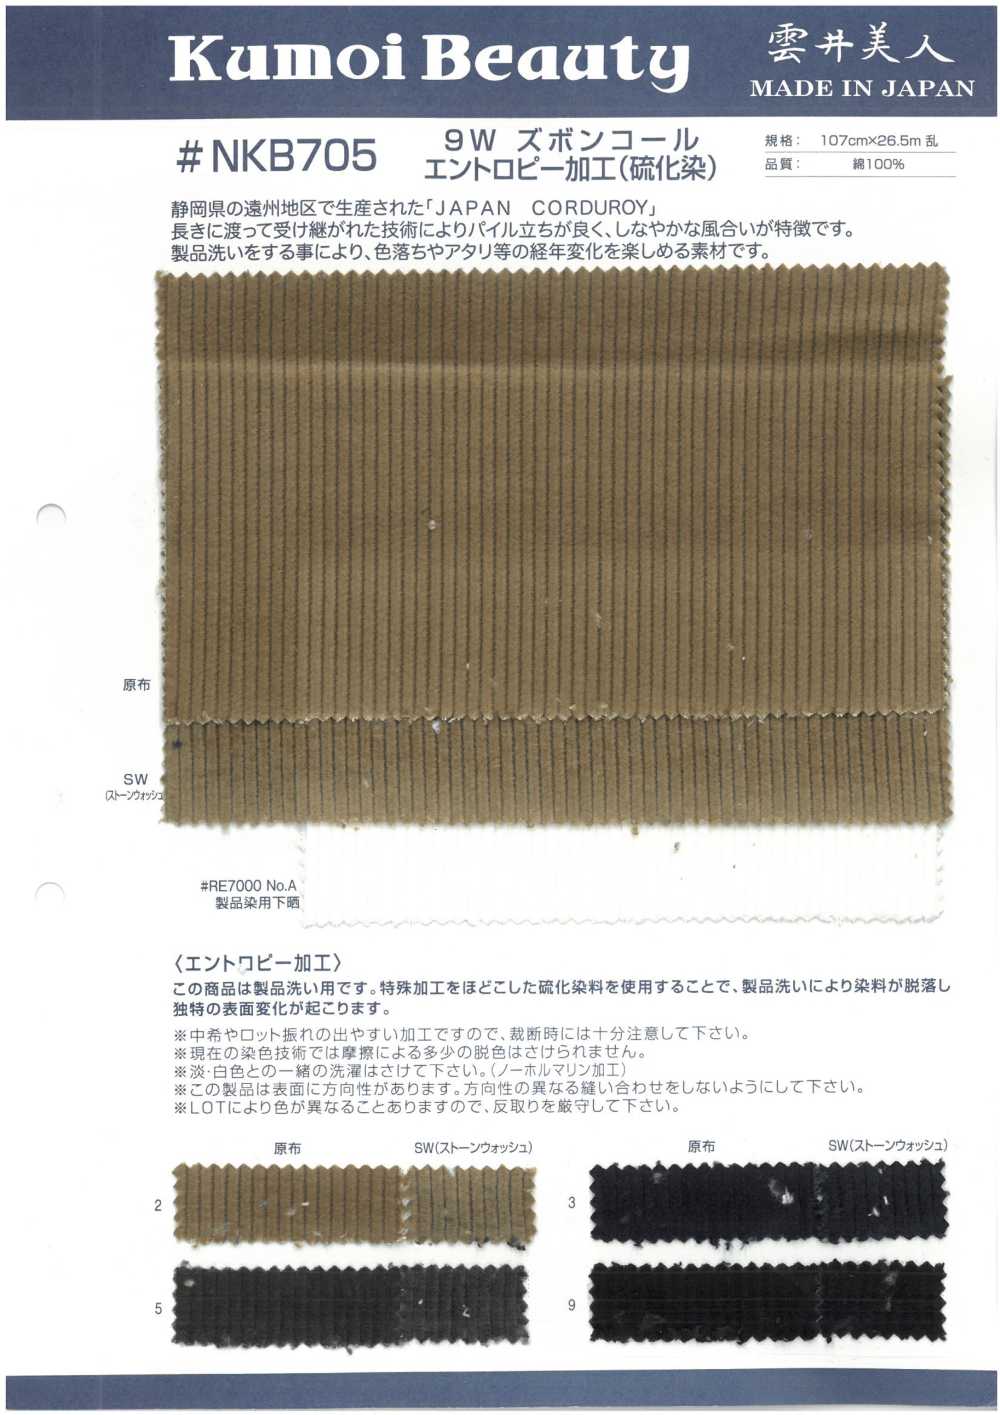 NKB705 Procesamiento De Entropía De Pana De Pantalones 9W (Teñido De Sulfuro)[Fabrica Textil] Kumoi Beauty (Pana De Terciopelo Chubu)